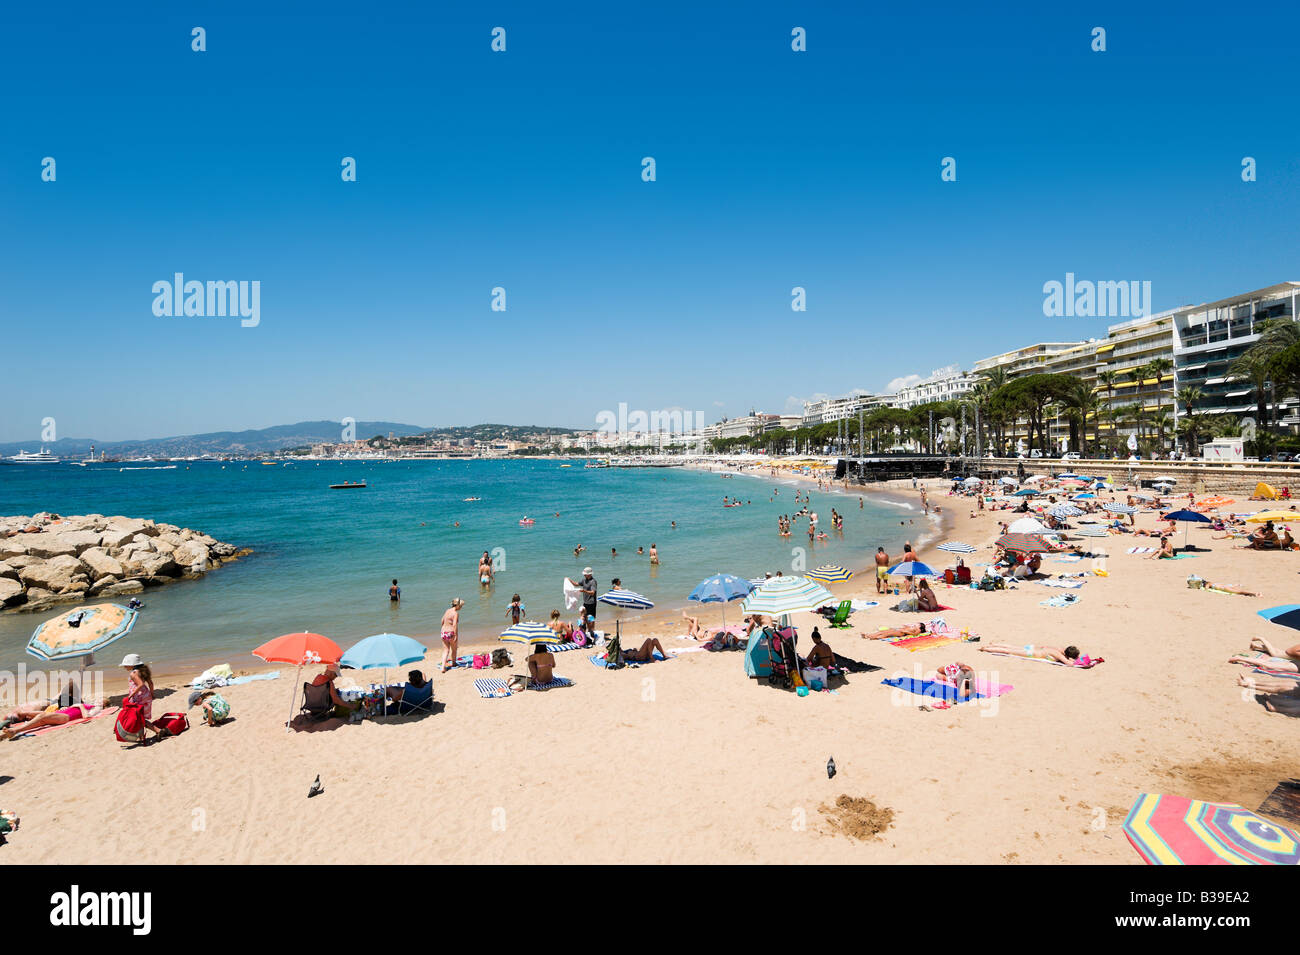 Plage de la Croisette (La Croisette Beach), Cannes, Cote d'Azur, Provenza, Francia Foto de stock